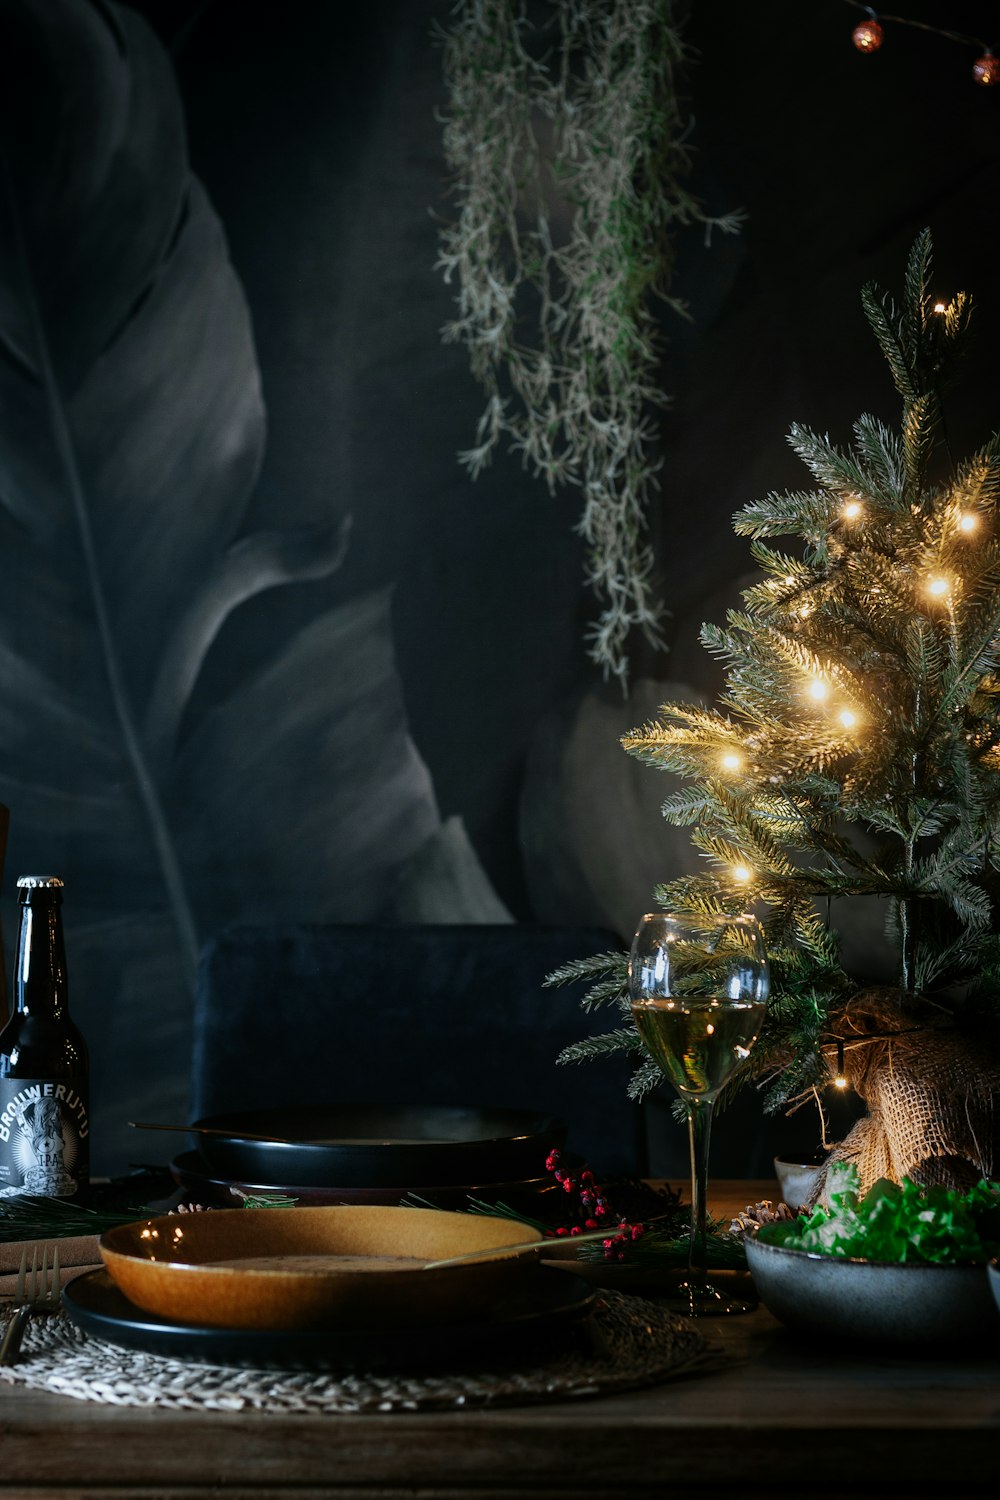 Arbre de Noël vert avec guirlandes lumineuses allumées près de la table noire